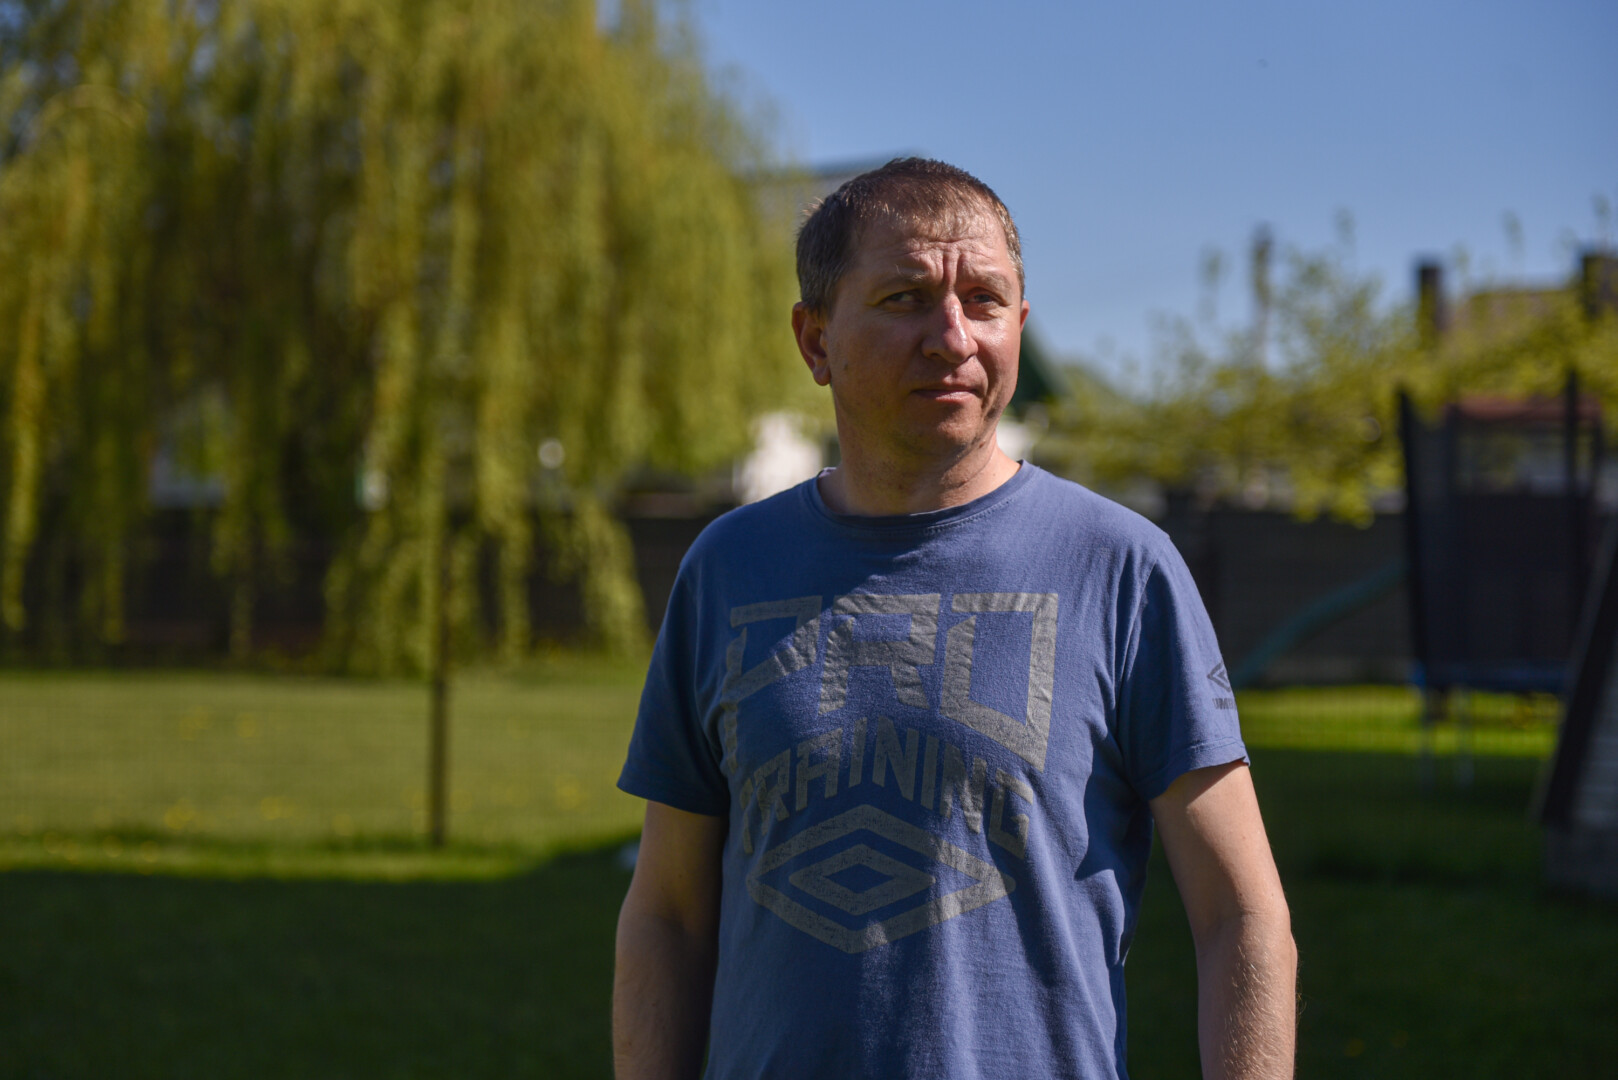 Nuo karo į Panevėžį pabėgęs neįgalus Vasilijus Abakumovas jau metai čia gyvena be sveikatos draudimo ir verčiasi vos iš 32 eurų Ukrainos mokamos neįgalumo pensijos. P. ŽIDONIO nuotr.